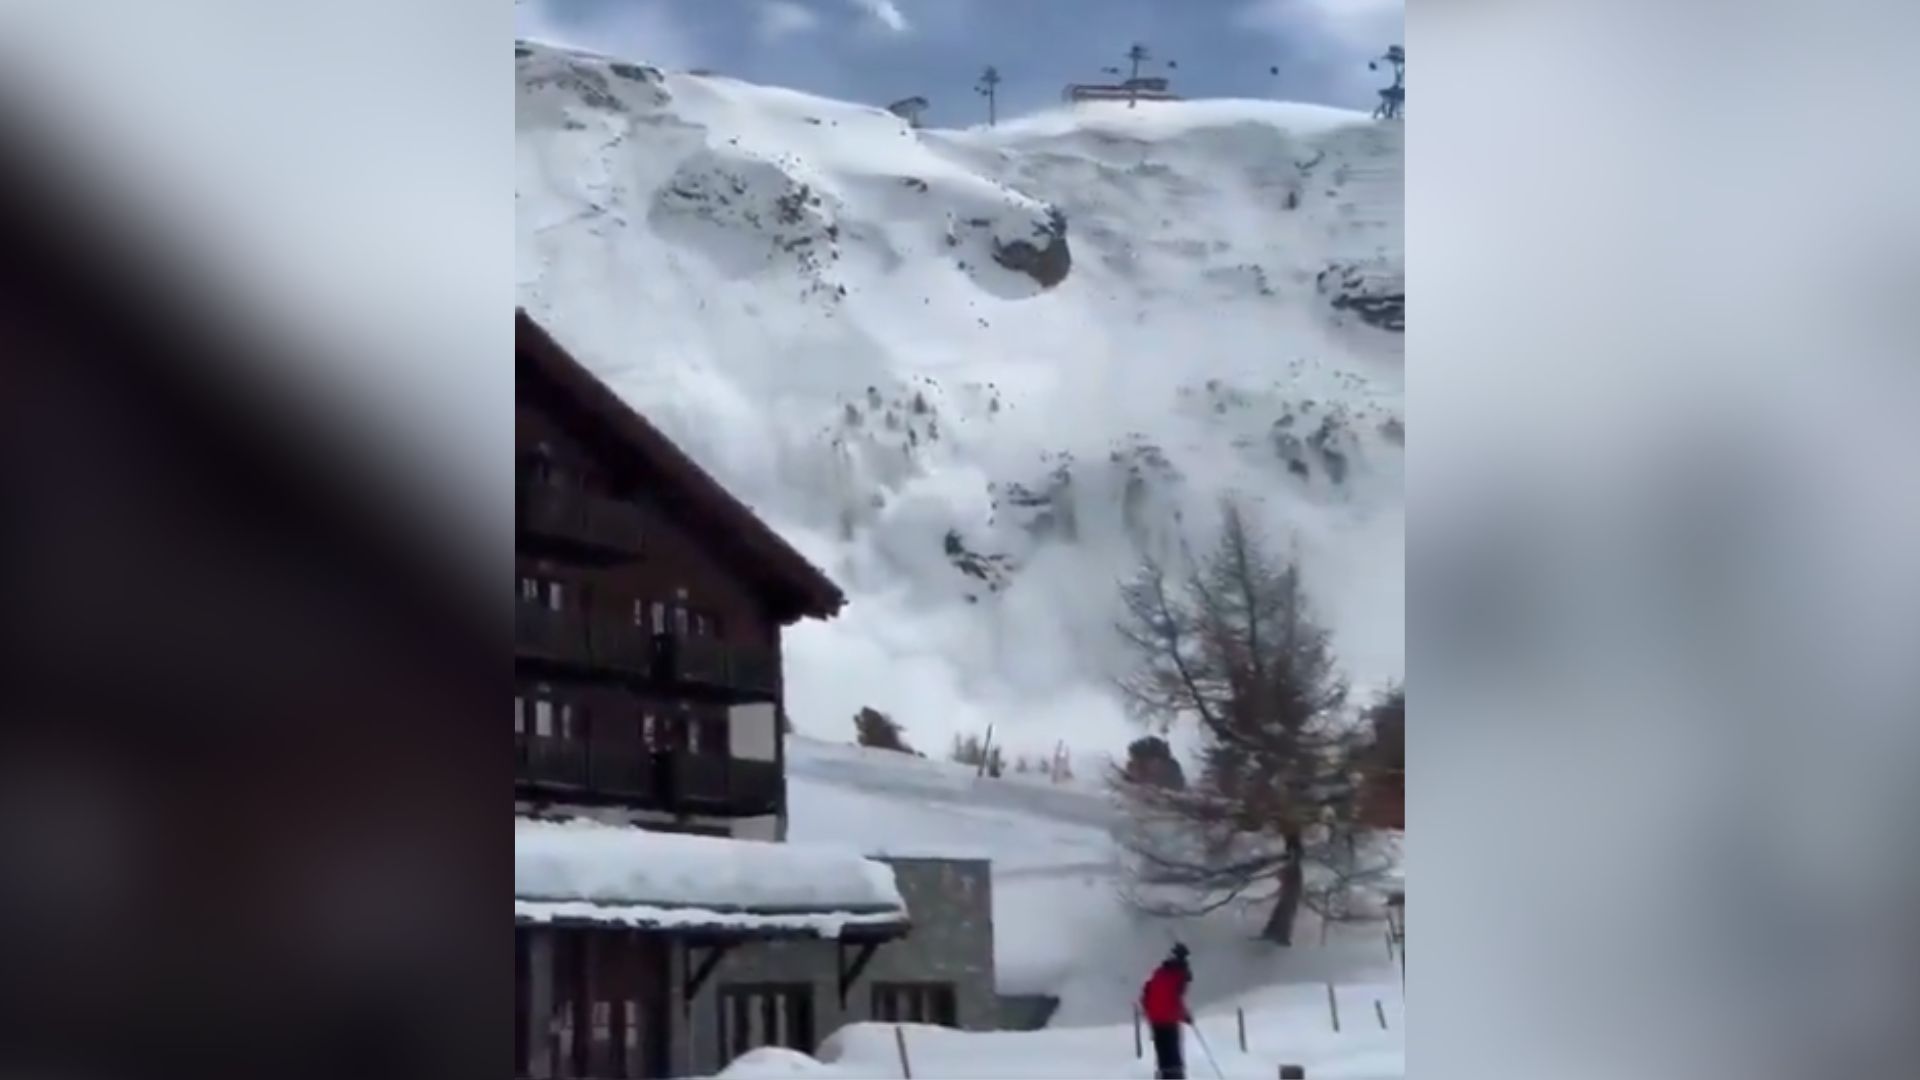 Avalanche aconteceu em um dos principais resorts de esqui nesta segunda-feira (1°)